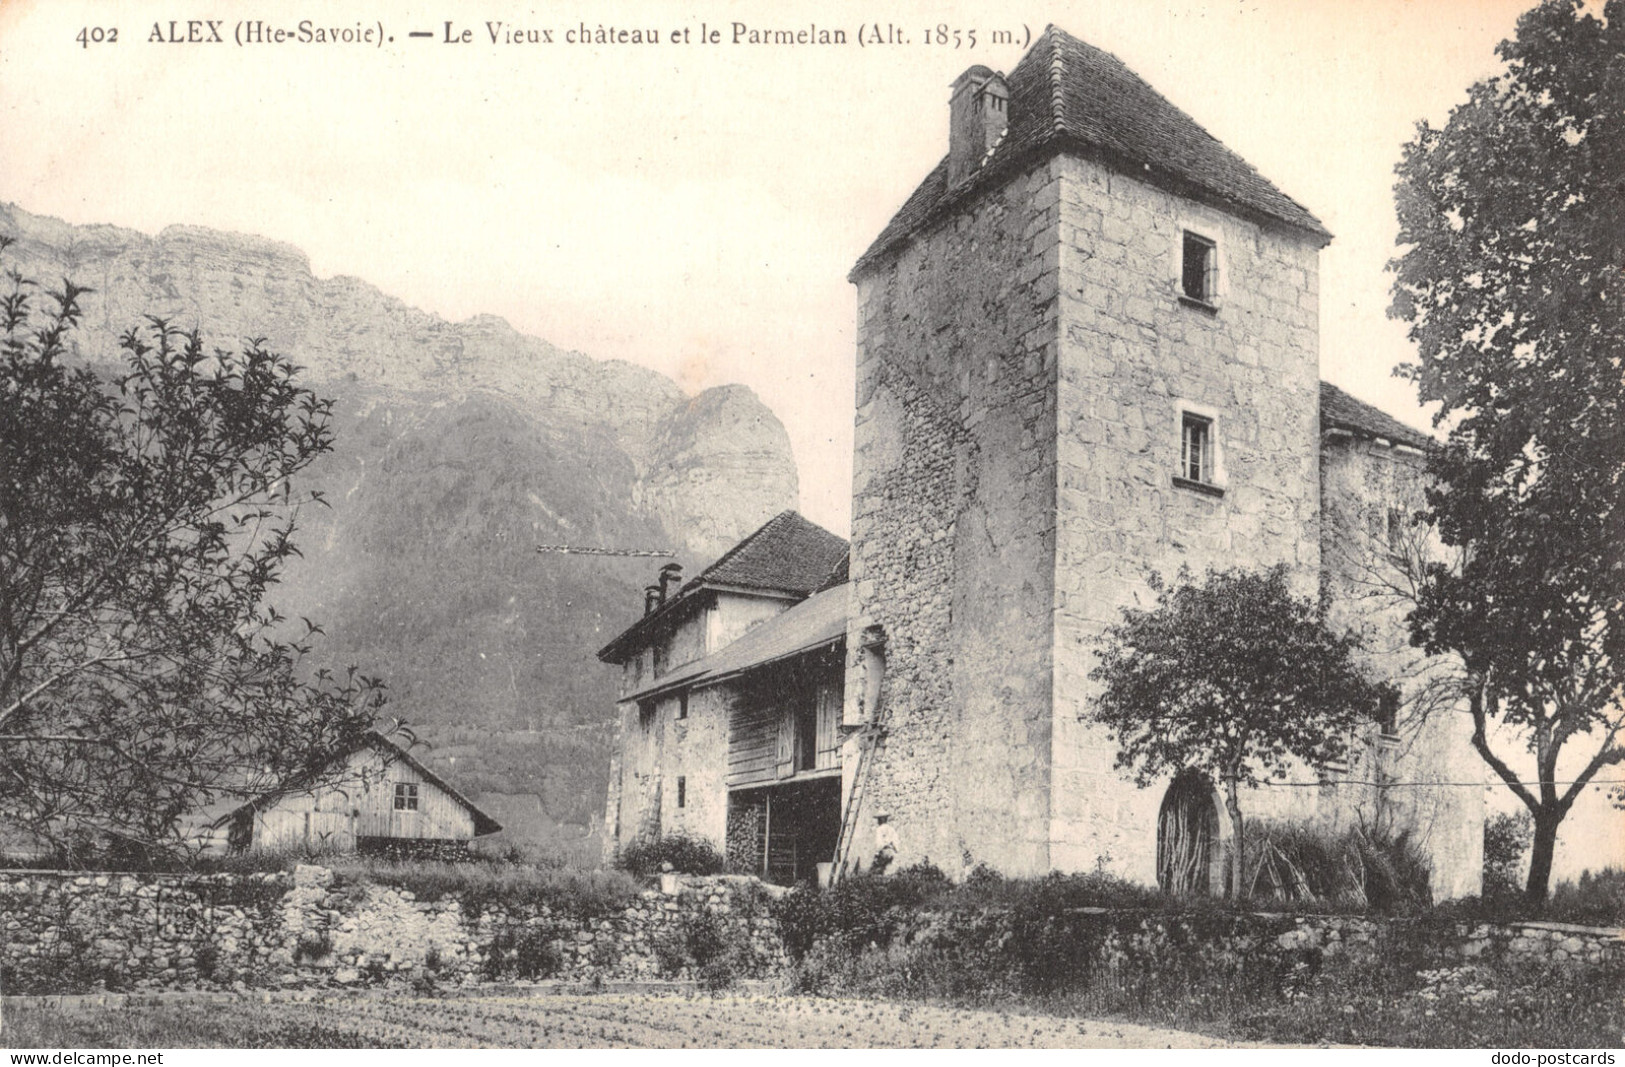 R334040 Alex. Hte Savoie. Le Vieux Chateau Et Le Parmelan. Alt. 1855 M. Sole Pho - Wereld